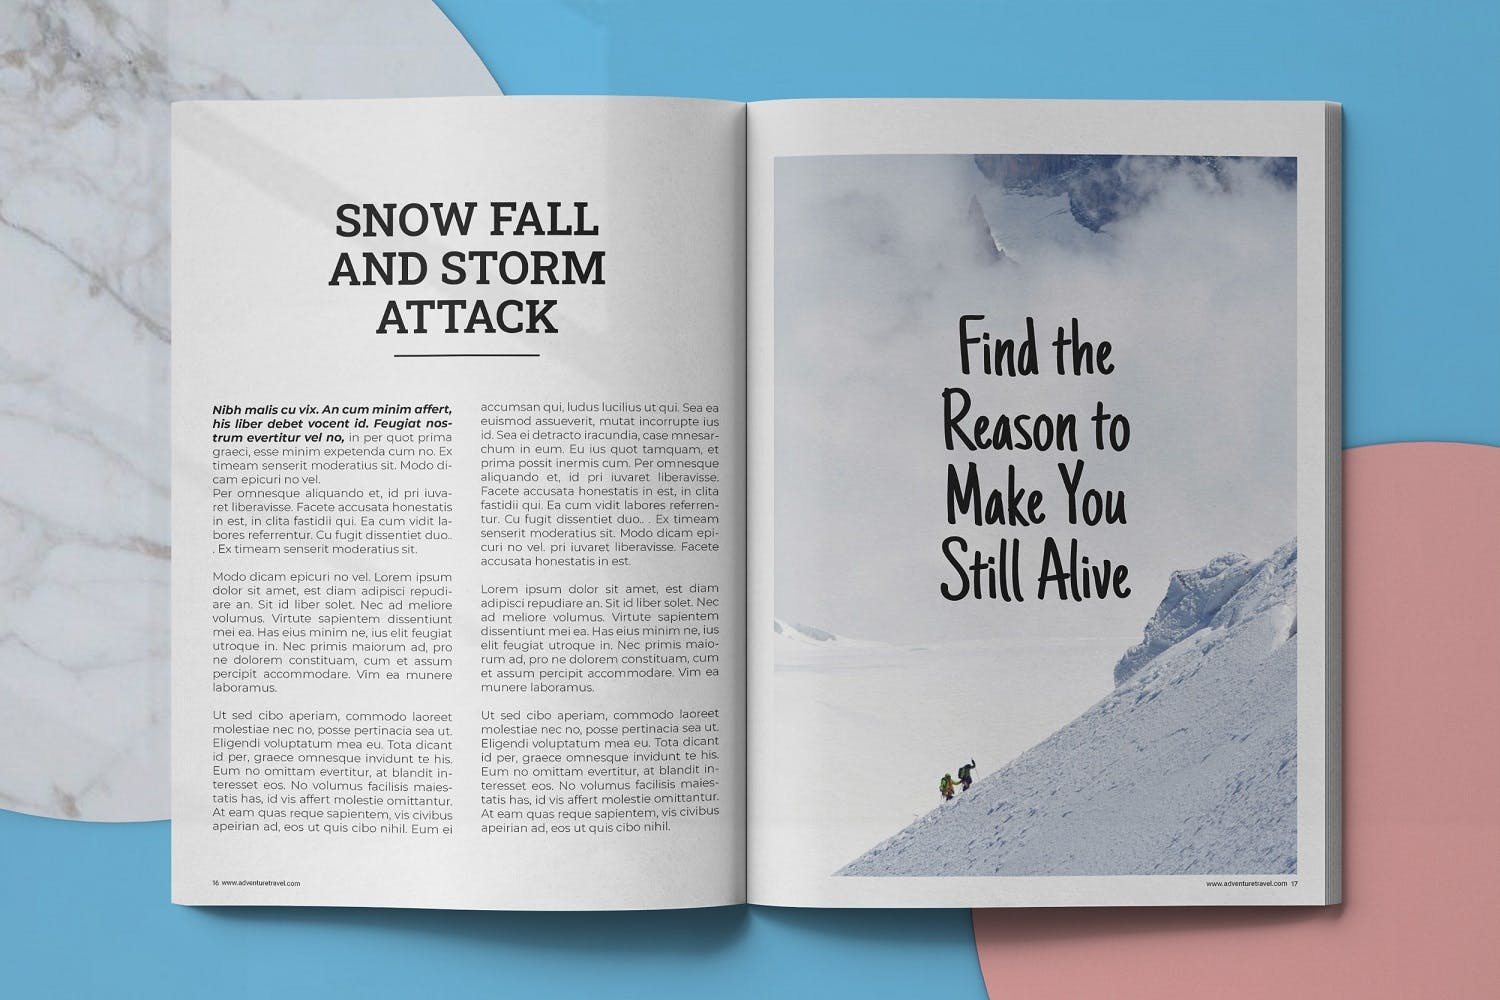 冒险旅行主题素材库精选杂志排版设计模板 Adventure Travel Magazine Template插图(8)